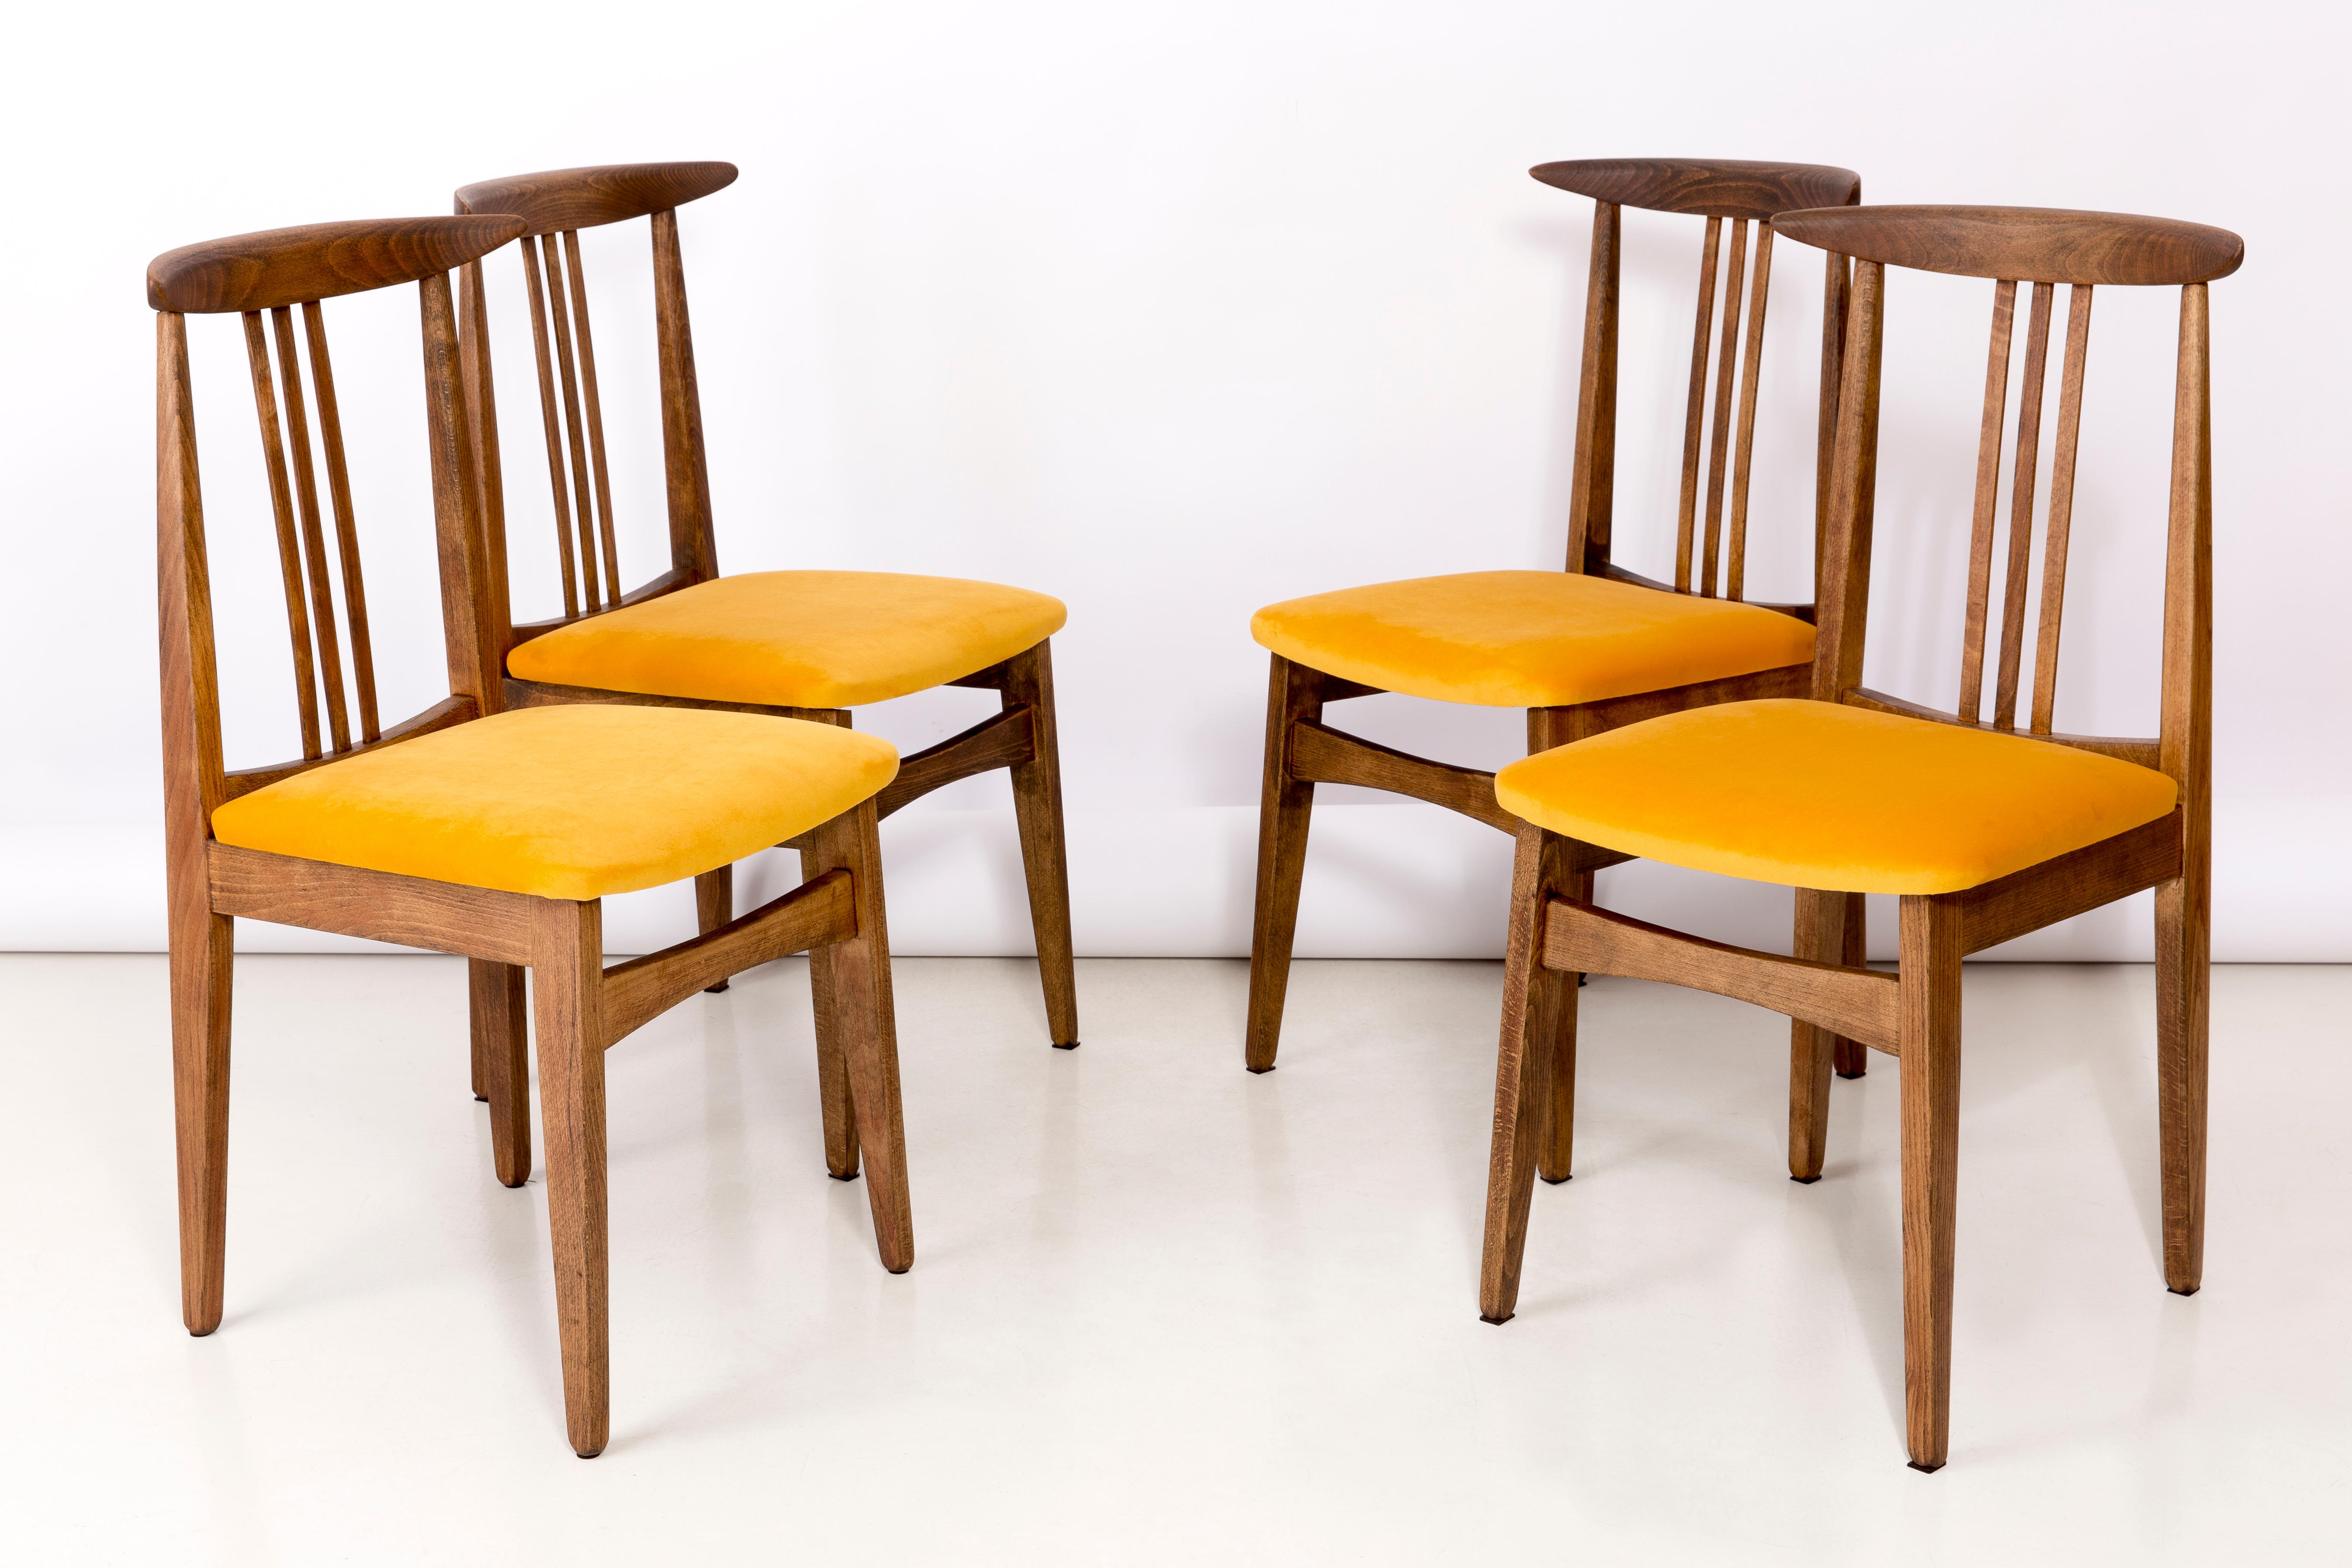 Ensemble de quatre chaises en hêtre conçues par M. Zielinski, type 200 / 100B. Fabriqué par le Centre de l'industrie du meuble d'Opole à la fin des années 1960 en Pologne. Les chaises ont subi une rénovation complète de la menuiserie et du